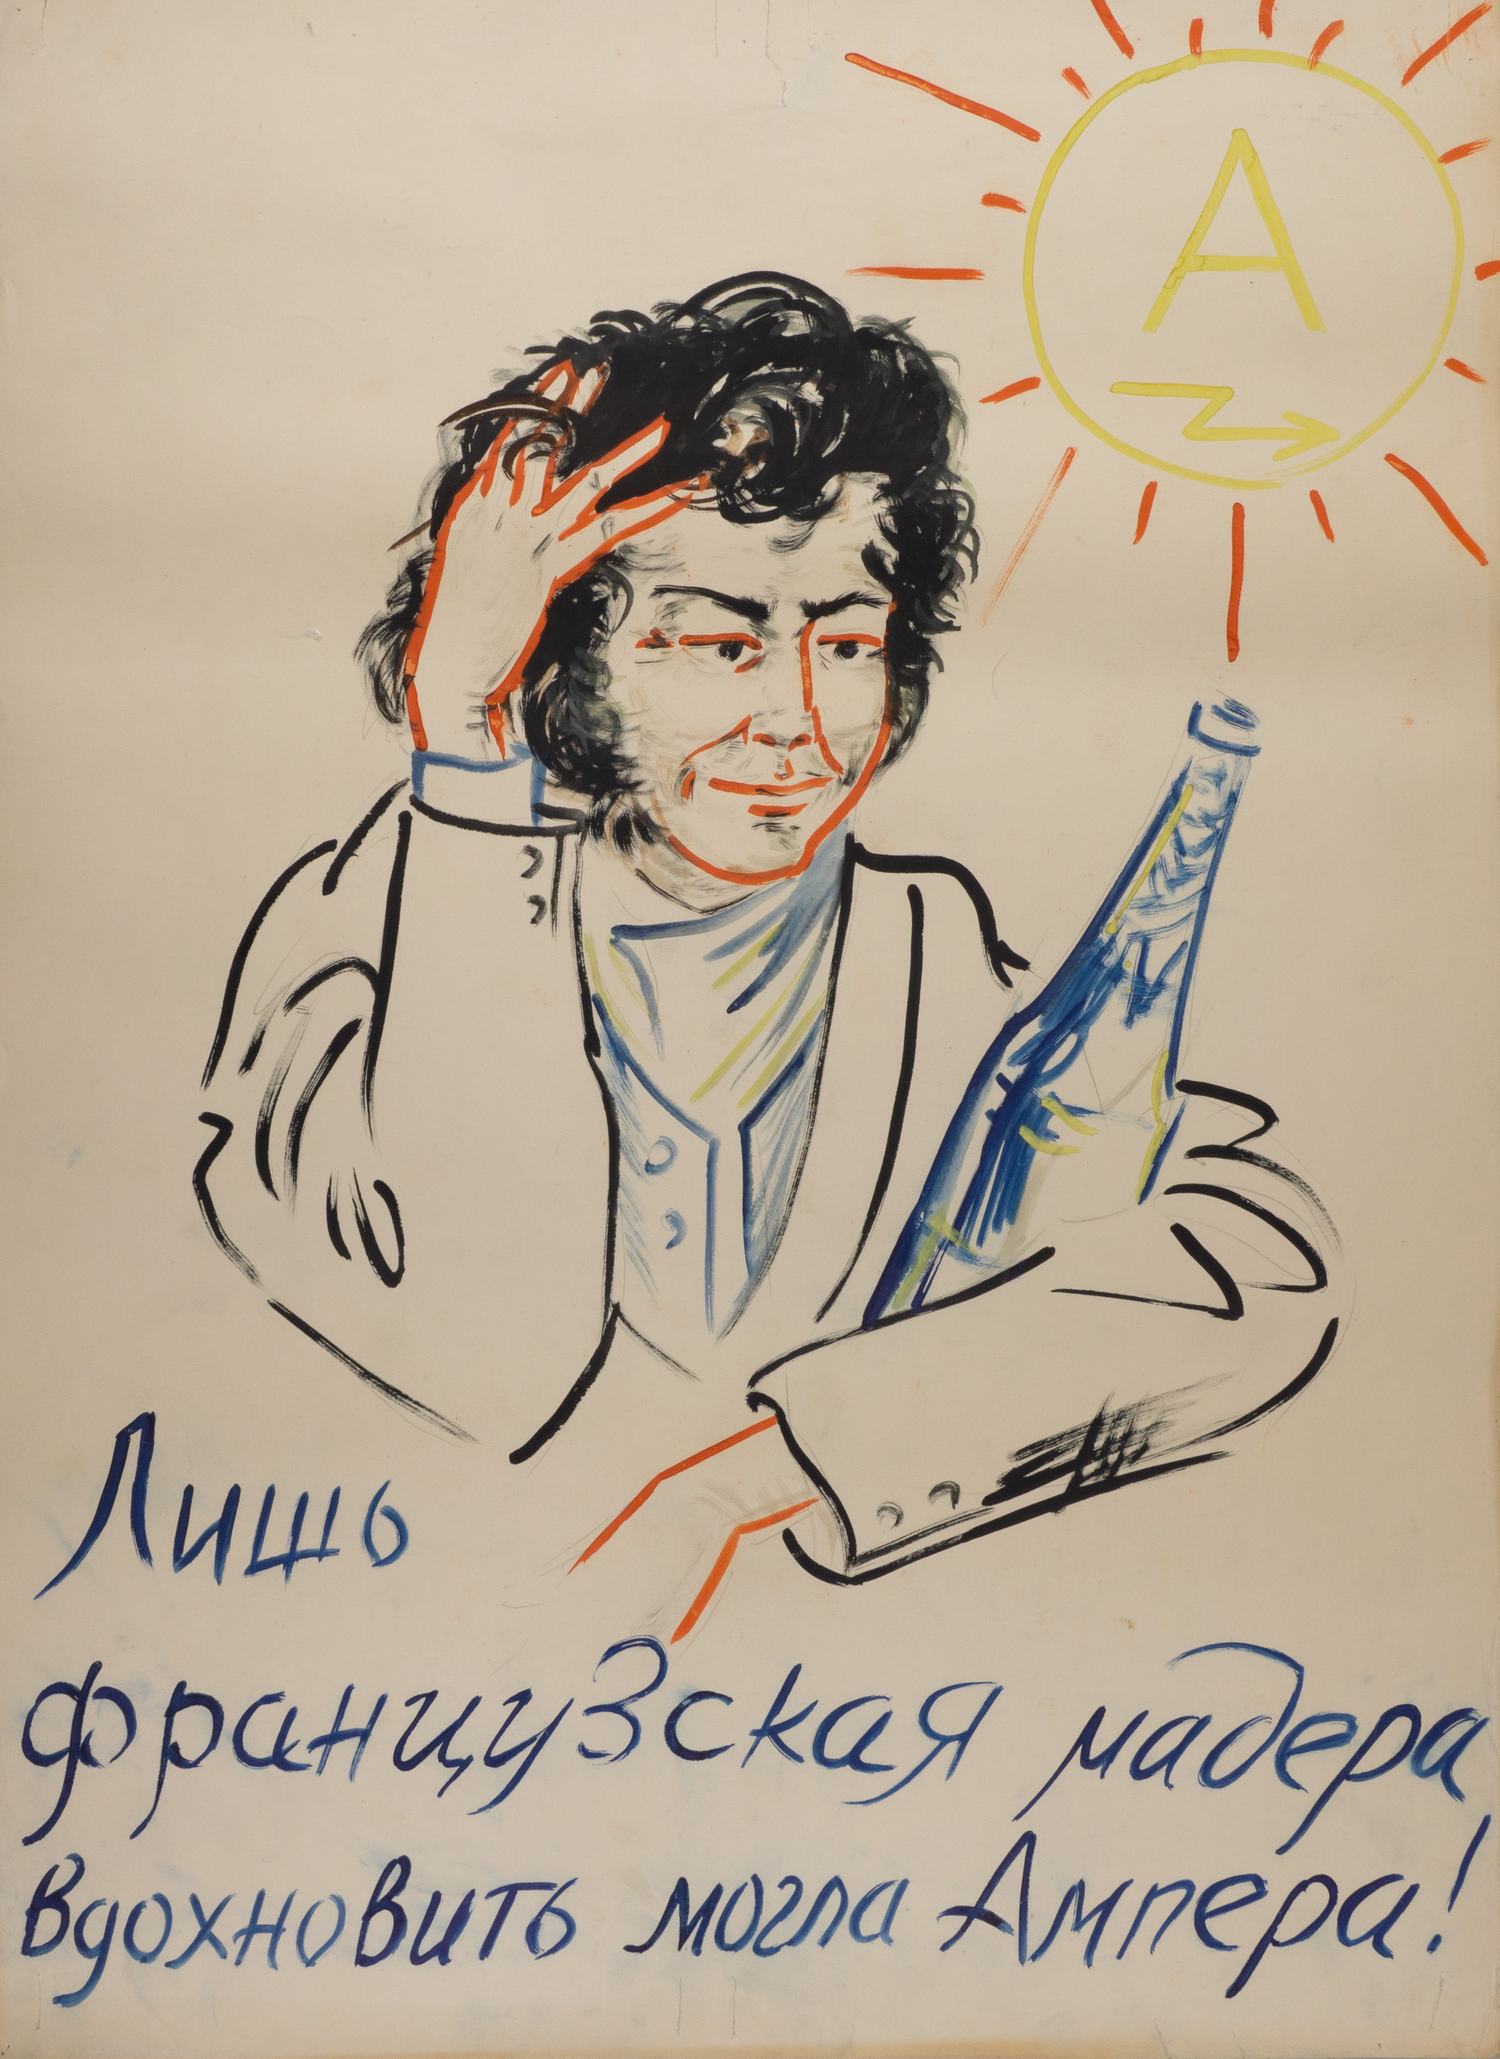 7 листов стенгазеты «Физики шутят о крепких напитках». СССР, 1960-е - 1970-е годы.